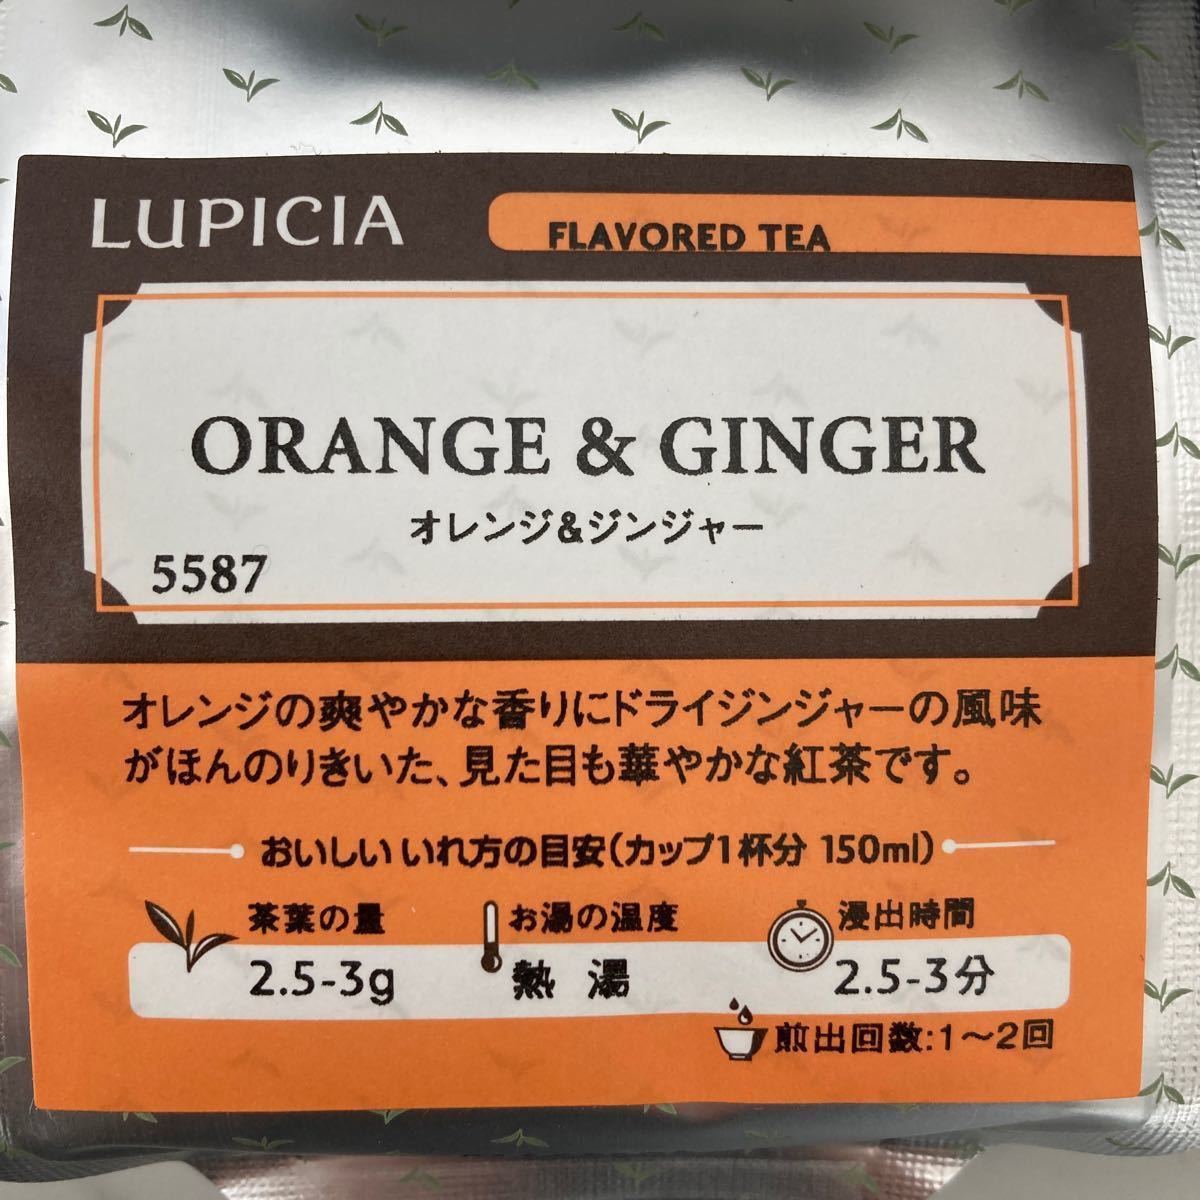 LUPICIA 紅茶 ルピシア フレーバーティー アルフォソマンゴー ネプチューン オレンジジンジャー 福袋